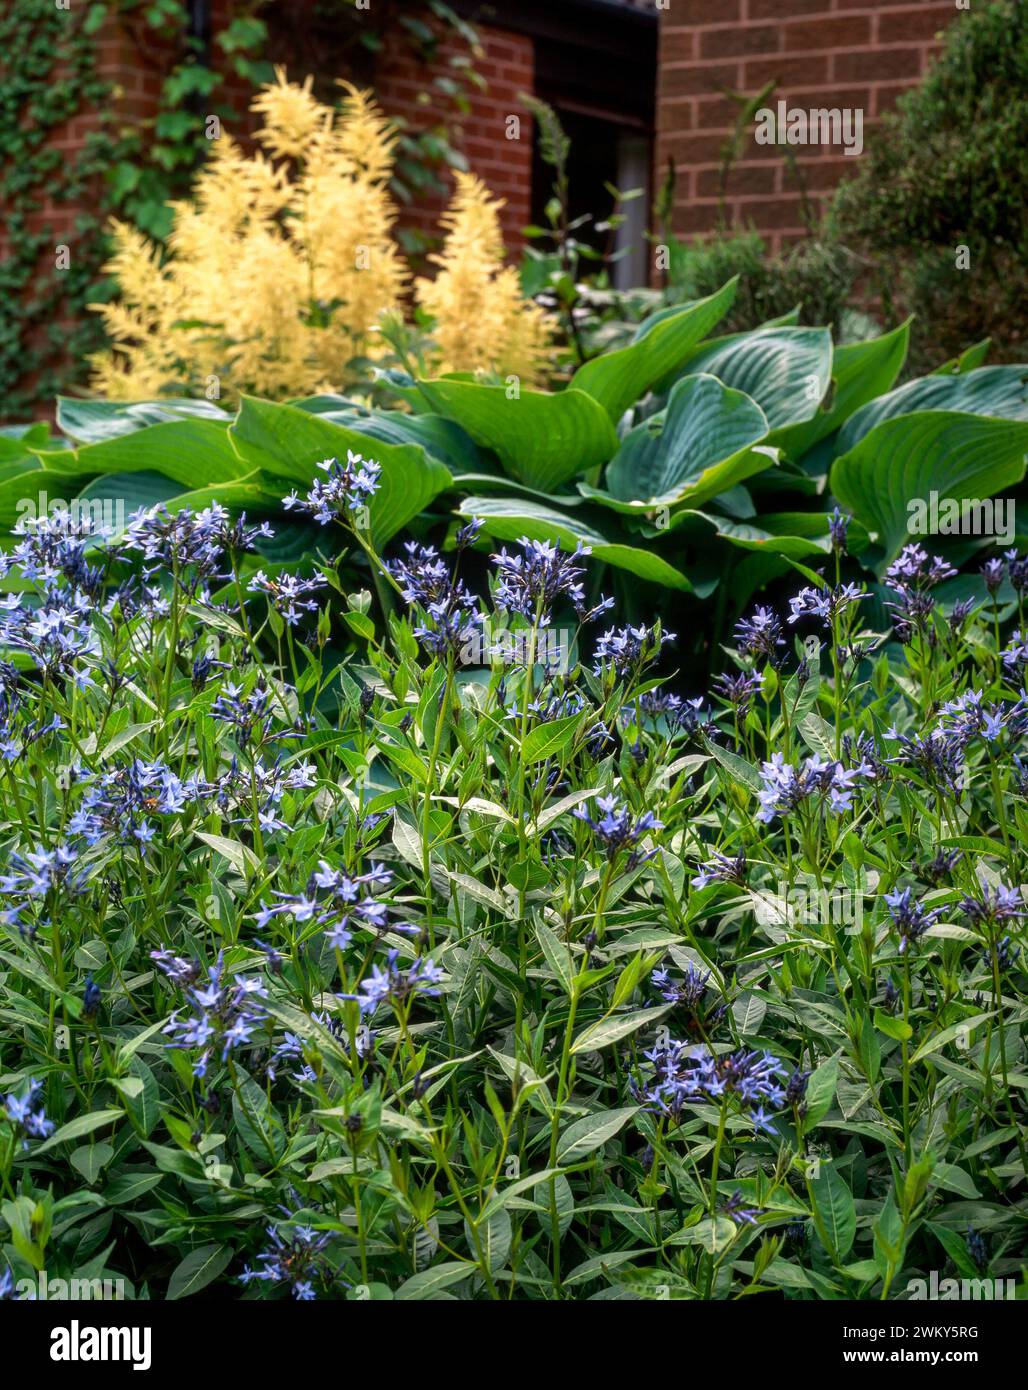 bluestar oriental (Rhazya Orientalis) avec des fleurs bleues et des feuilles d'Hosta vertes et des fleurs d'Astilbe derrière, poussant dans le jardin anglais en juin, Angleterre Banque D'Images